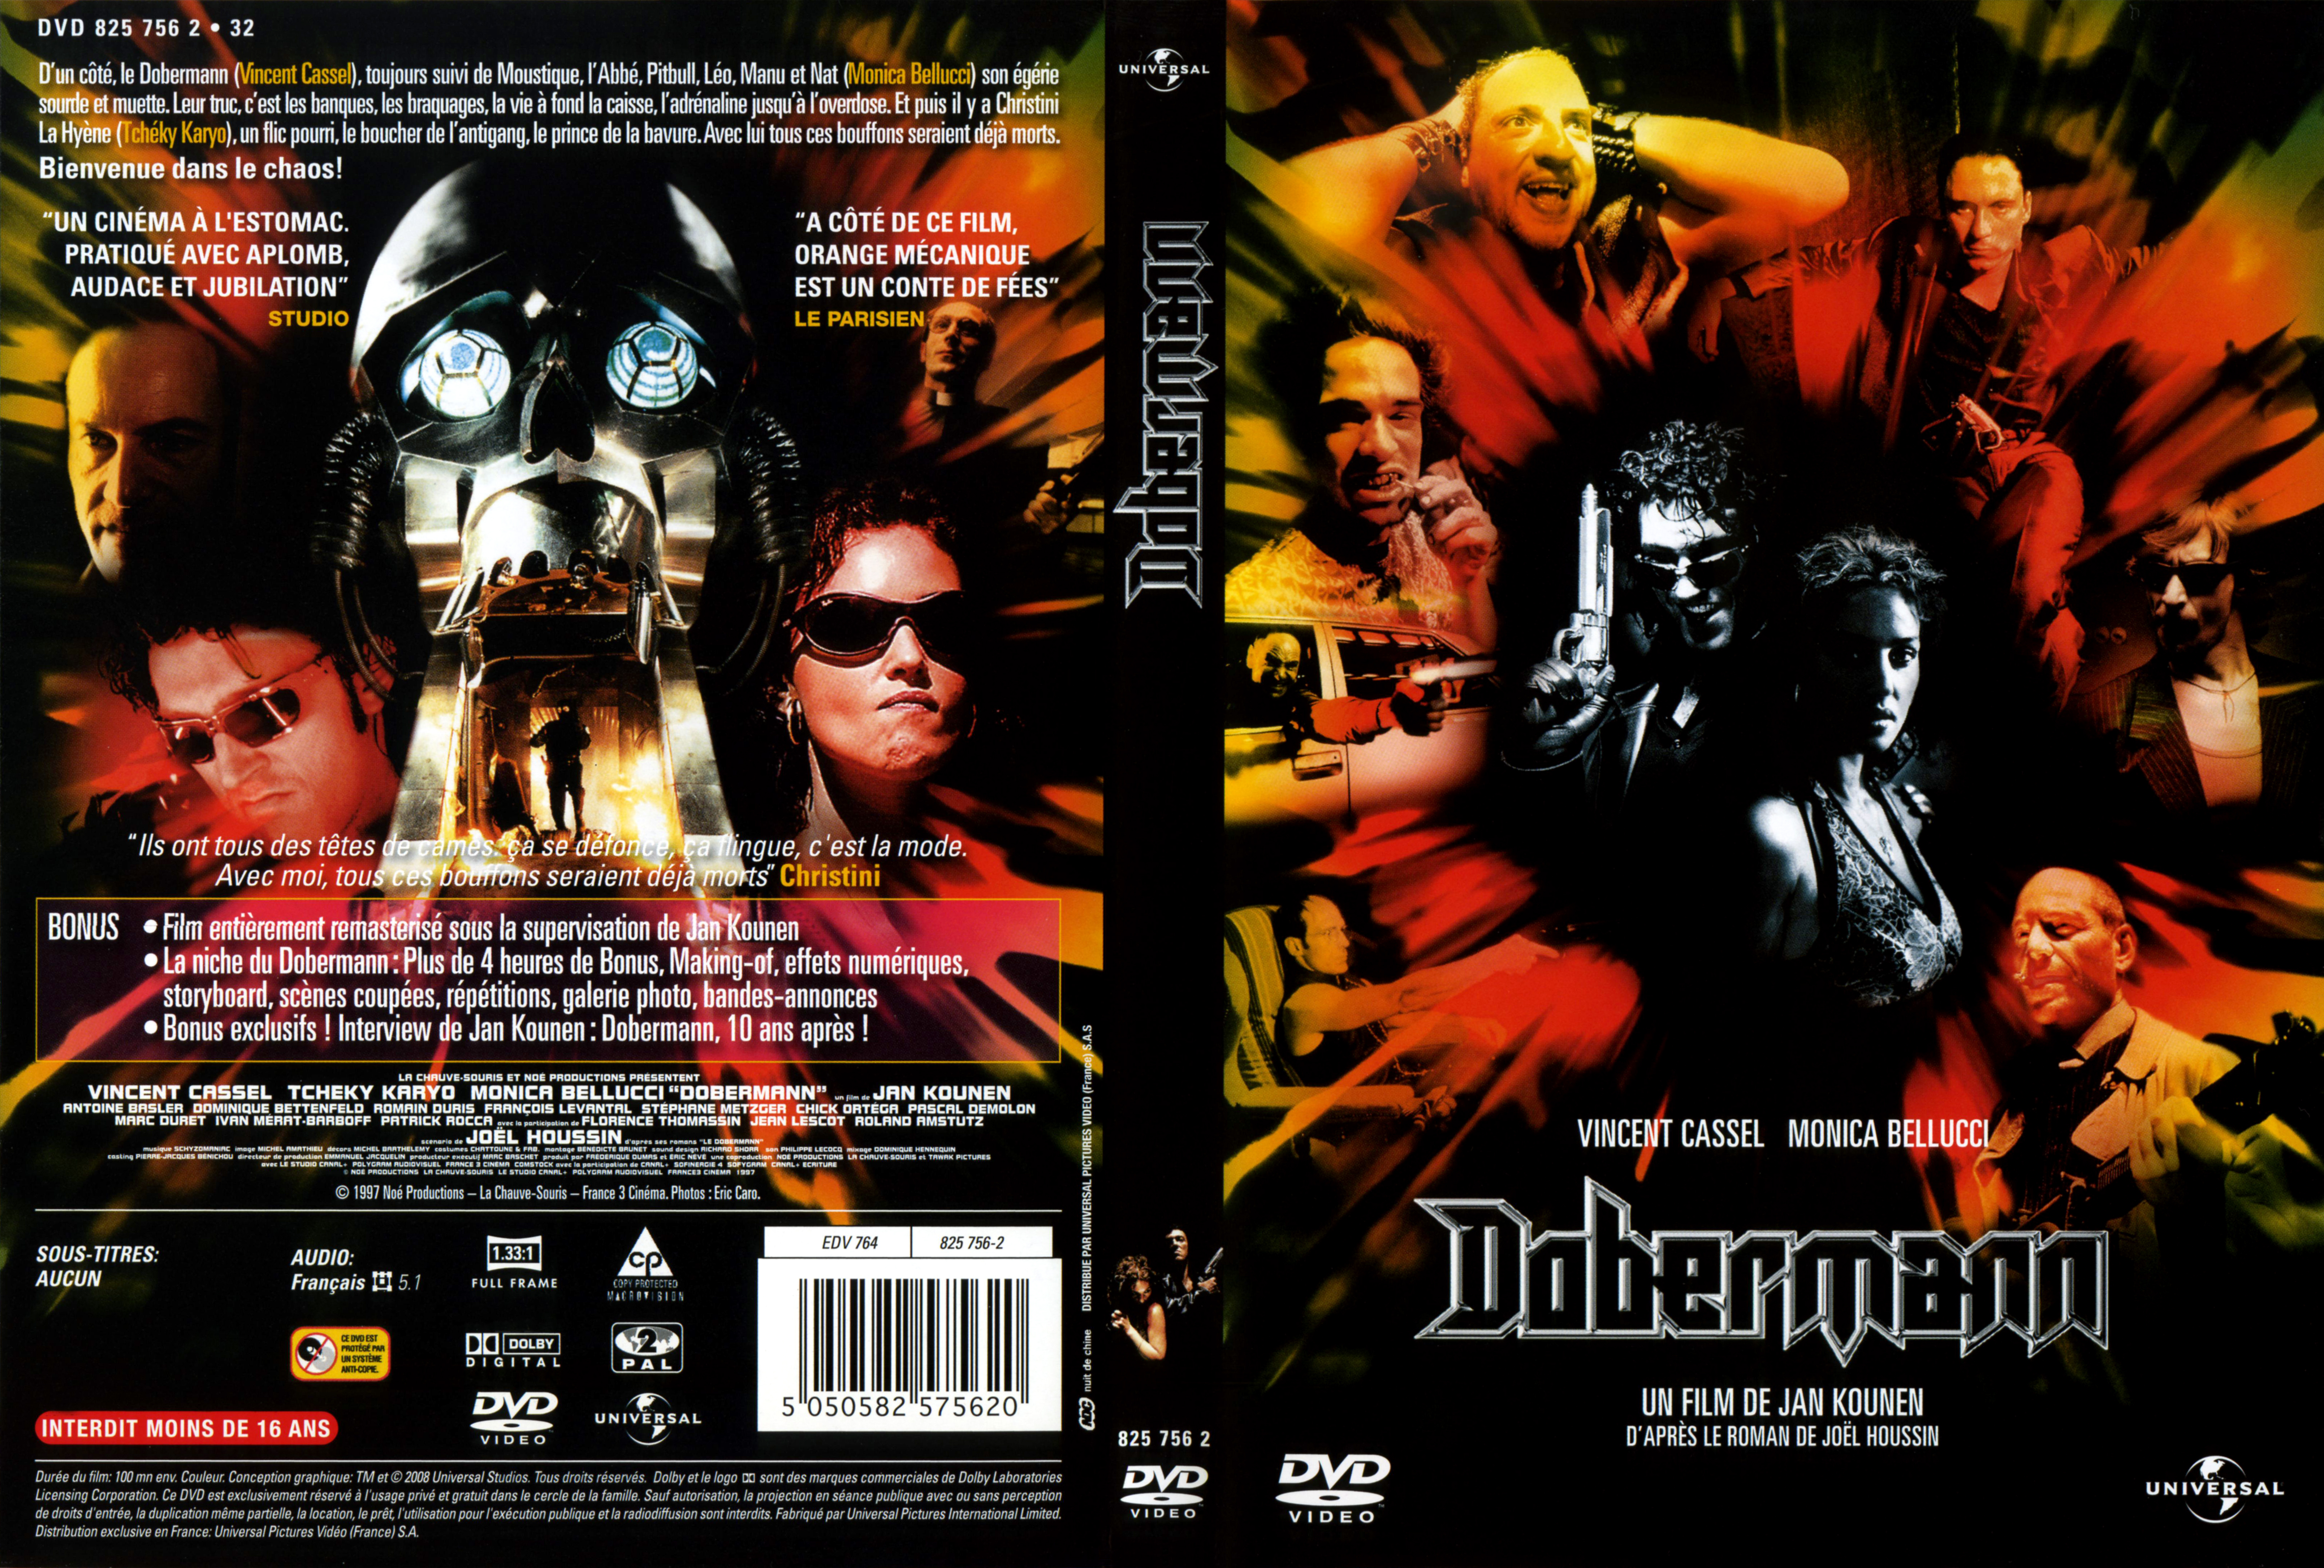 Jaquette DVD Dobermann v4